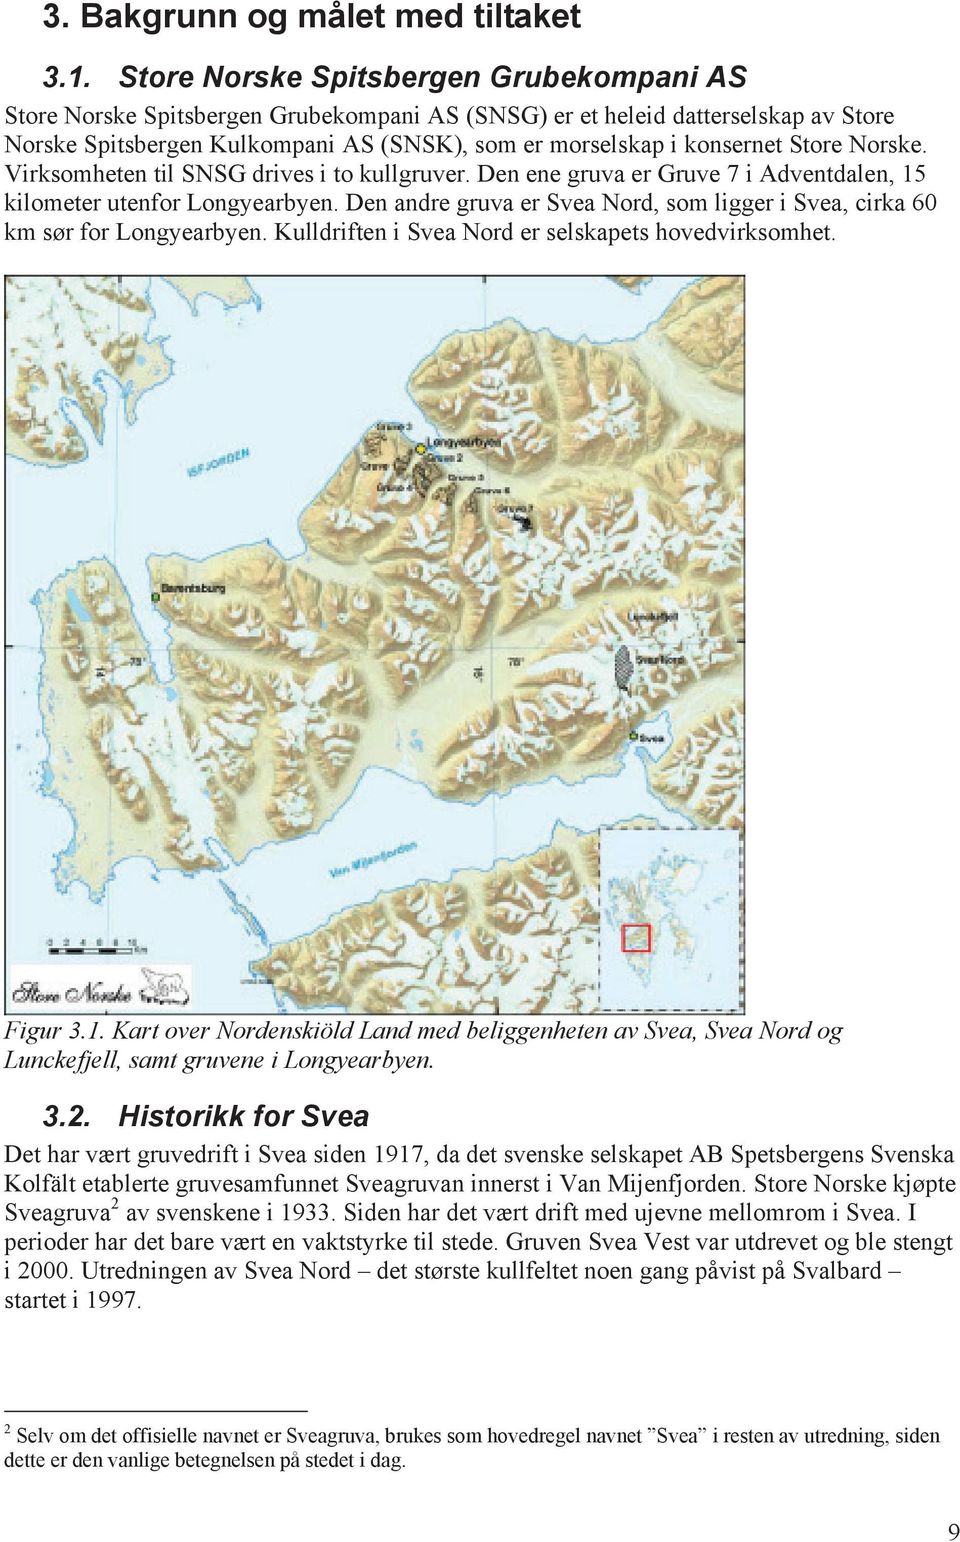 Store Norske. Virksomheten til SNSG drives i to kullgruver. Den ene gruva er Gruve 7 i Adventdalen, 15 kilometer utenfor Longyearbyen.